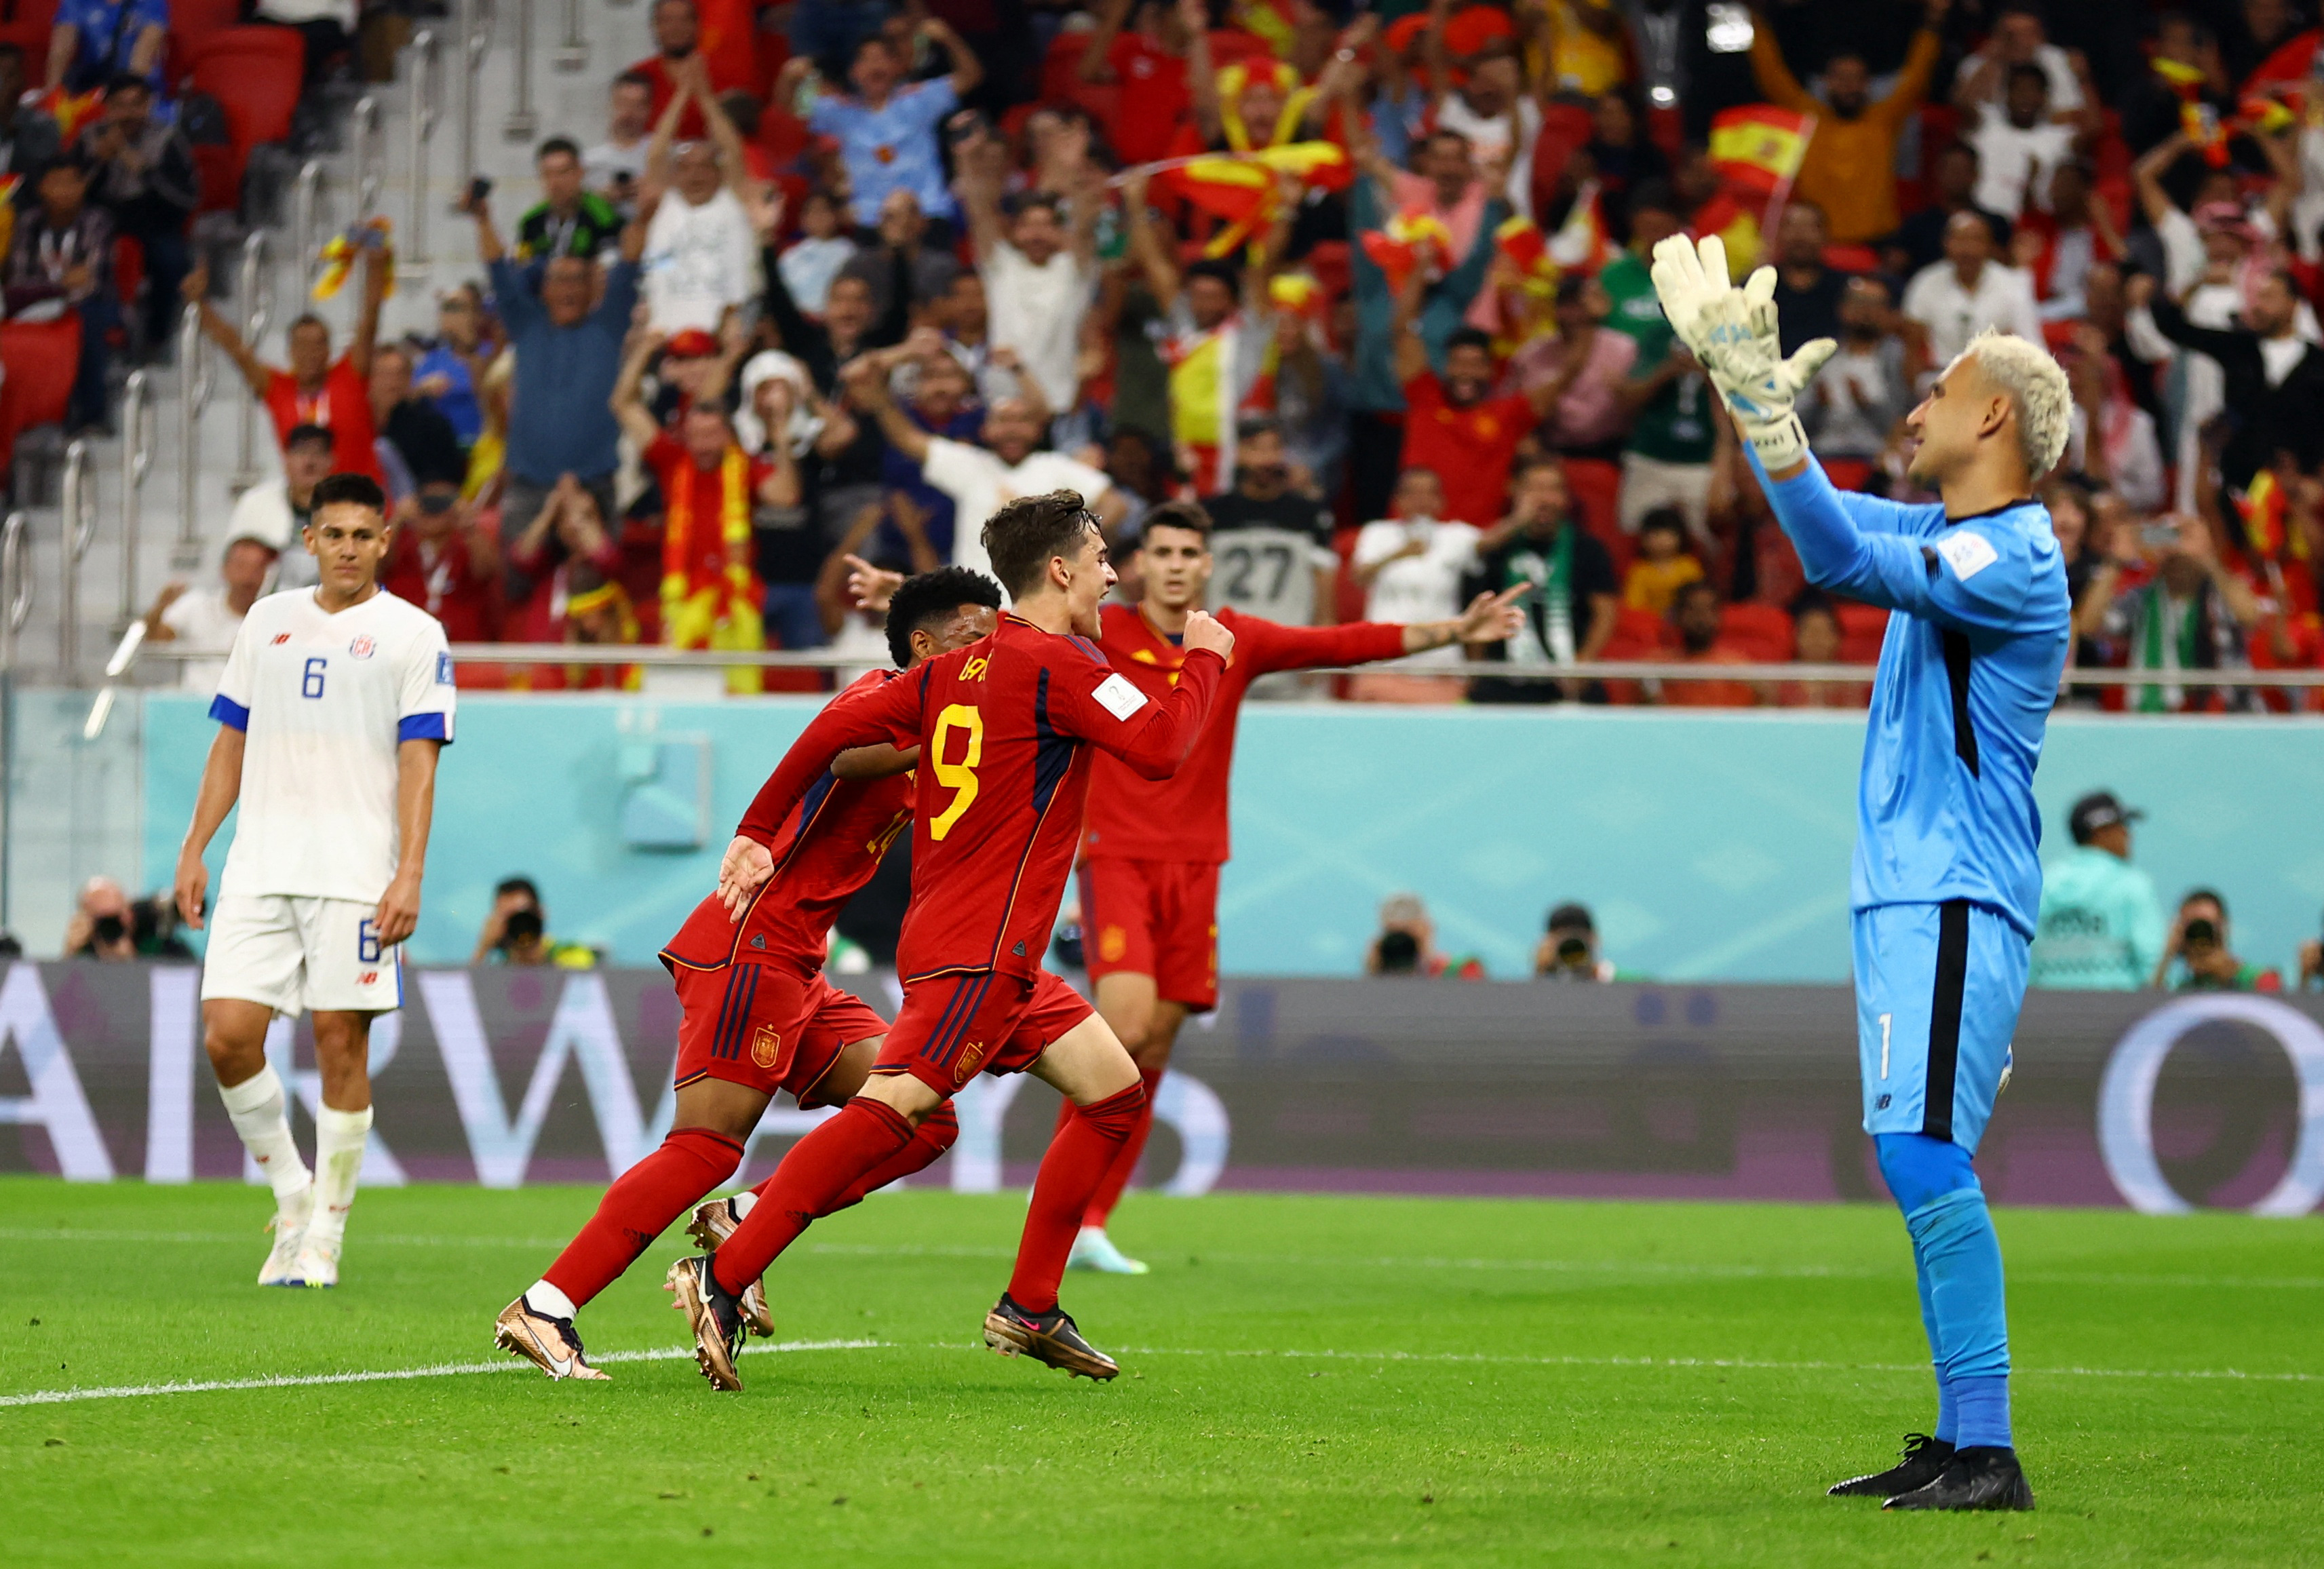 España vs Costa Rica EN VIVO - Mundial Qatar 2022: Gavi anota el 5-0 en la goleada de La Roja ante los Ticos - Infobae